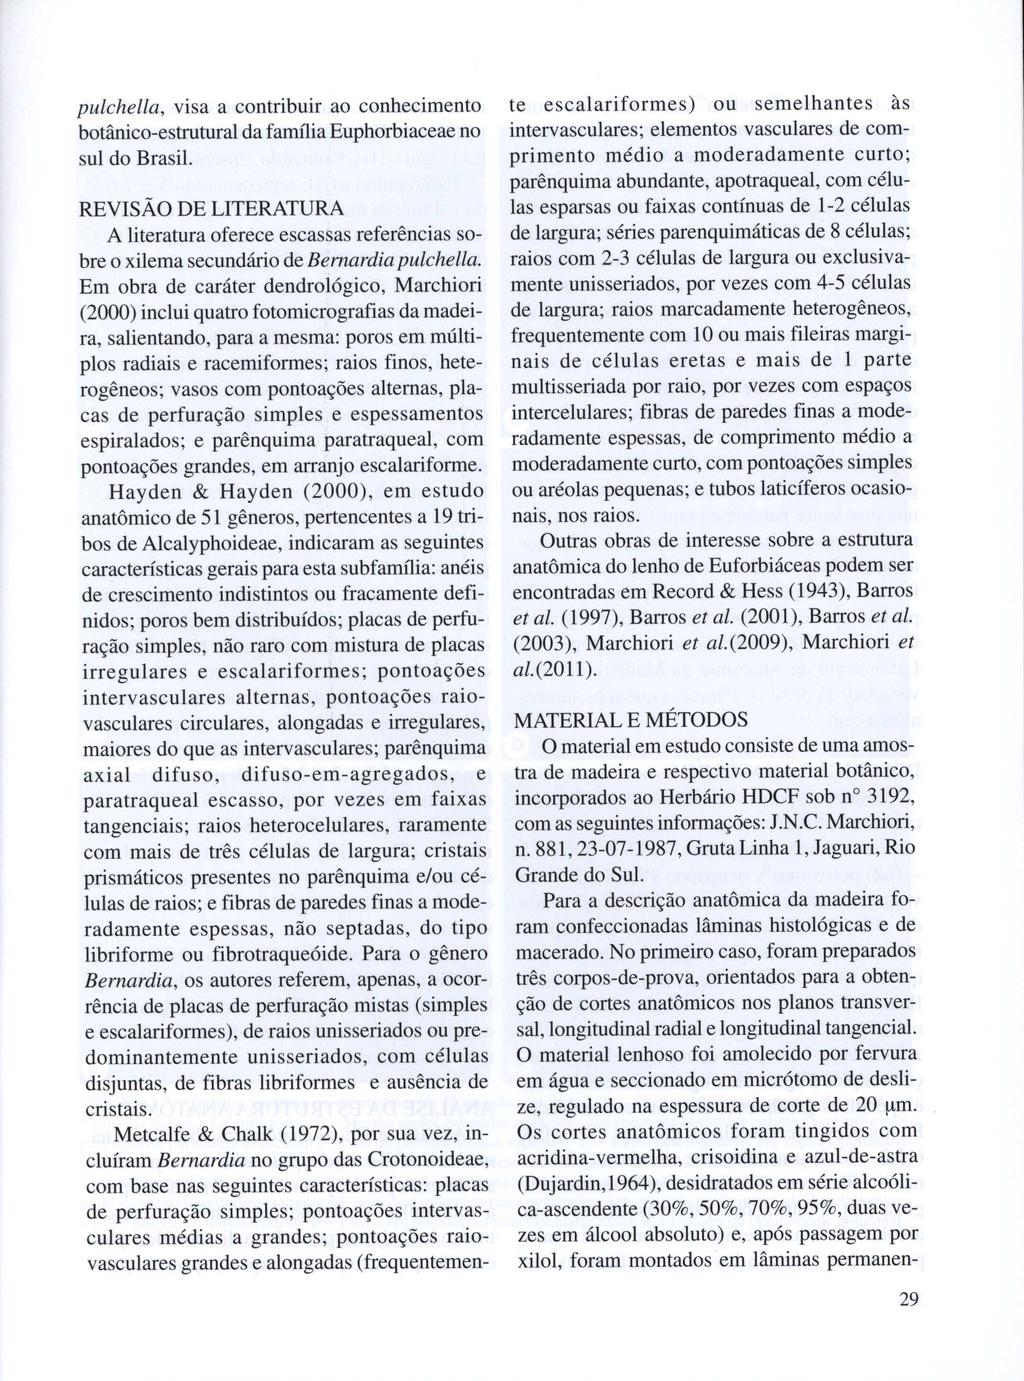 pulchella, visa a contribuir ao conhecimento botânico-estrutural da farru1iaeuphorbiaceae no sul do Brasil.